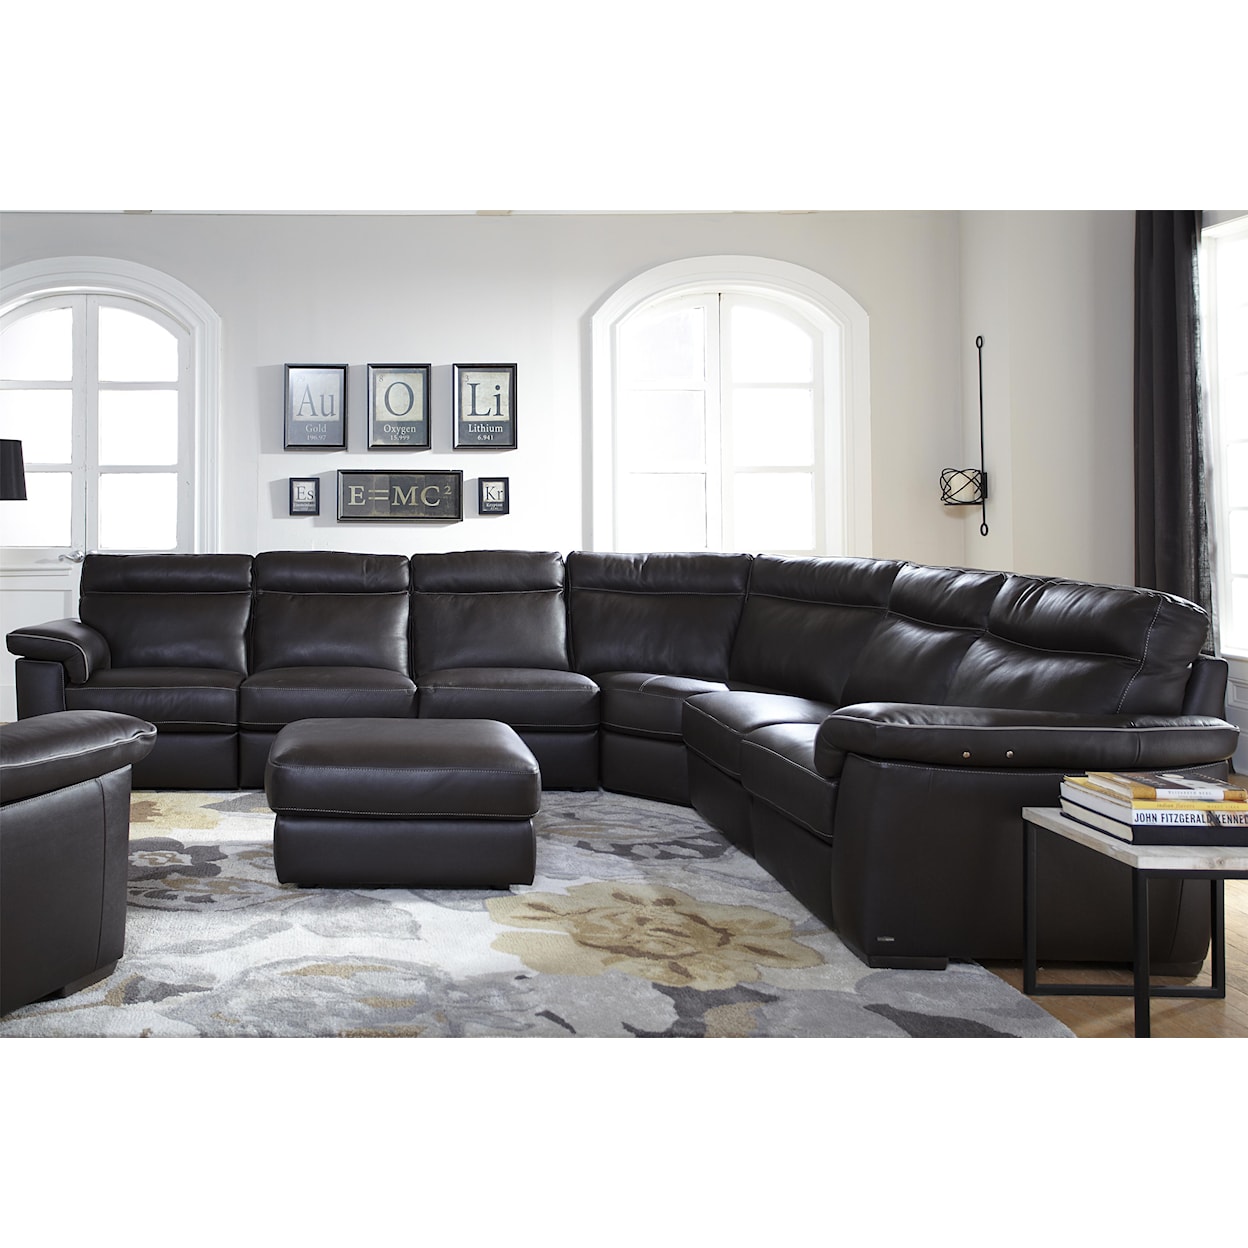 Natuzzi Editions B757 4 Pc Stationary Sectional Sofa